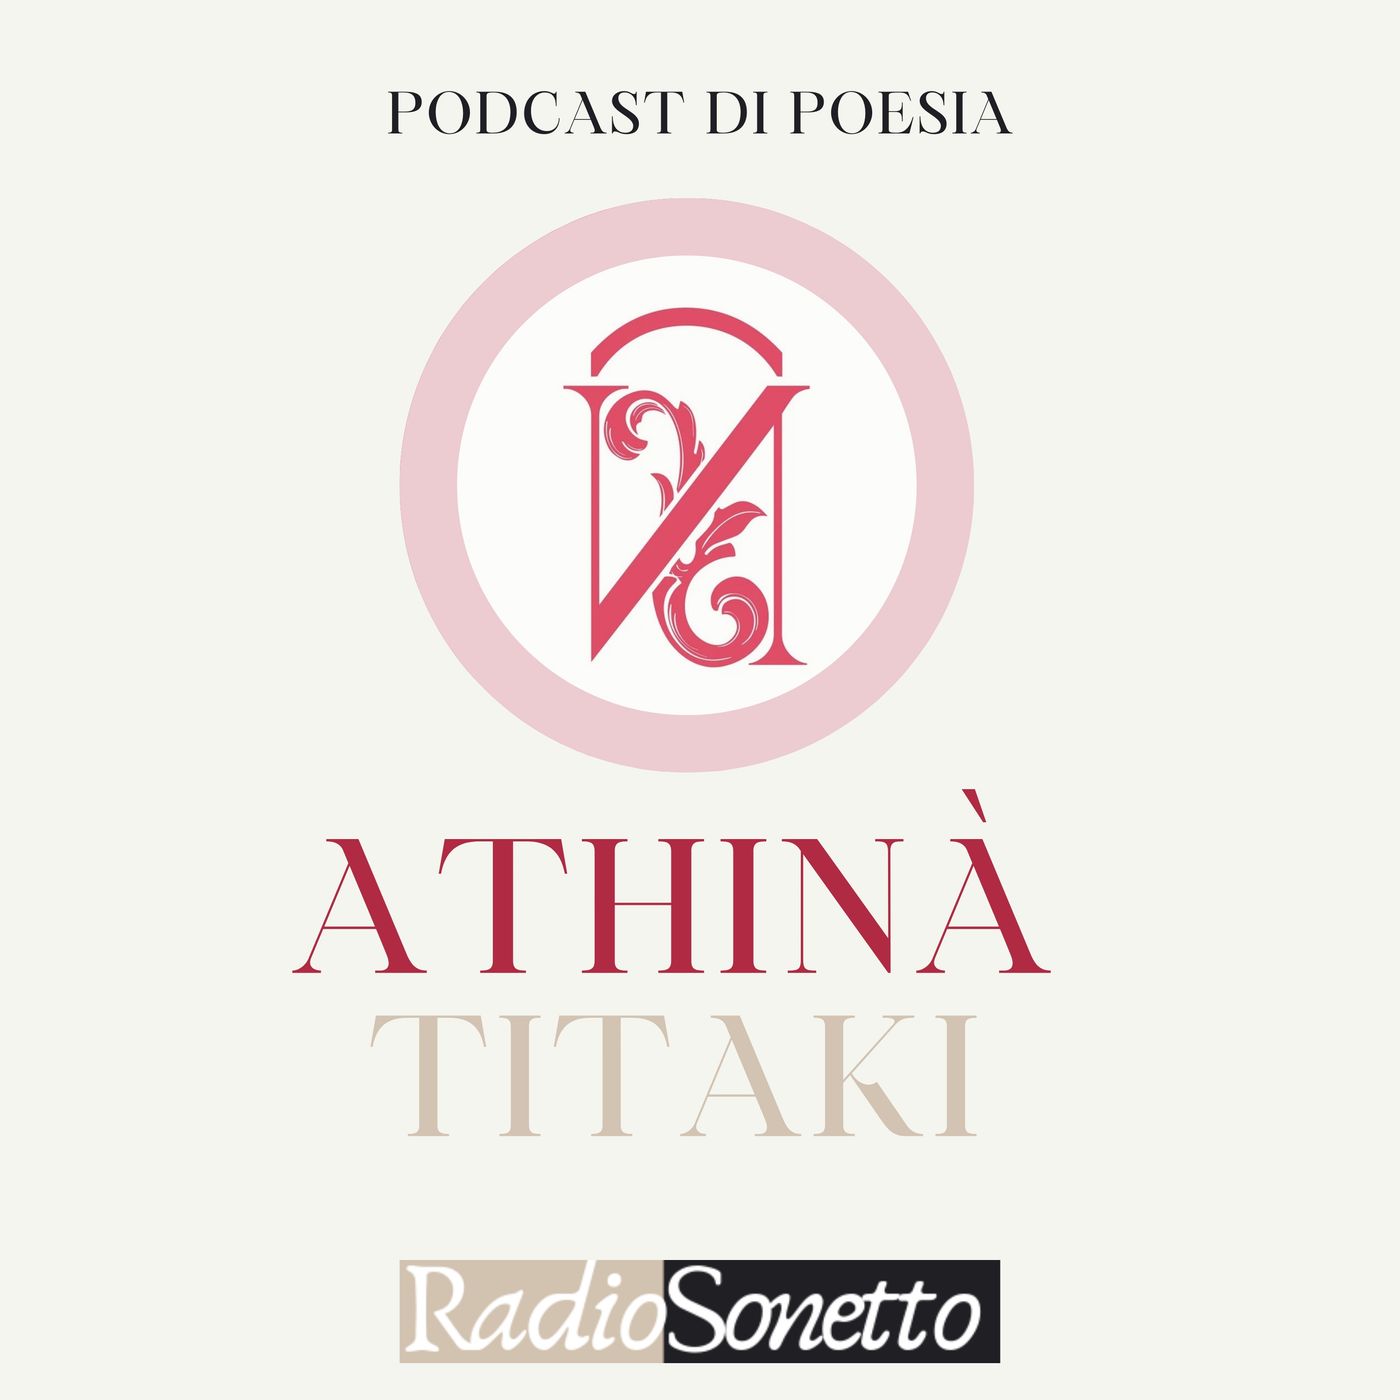 Athinà Titaki - Il mago